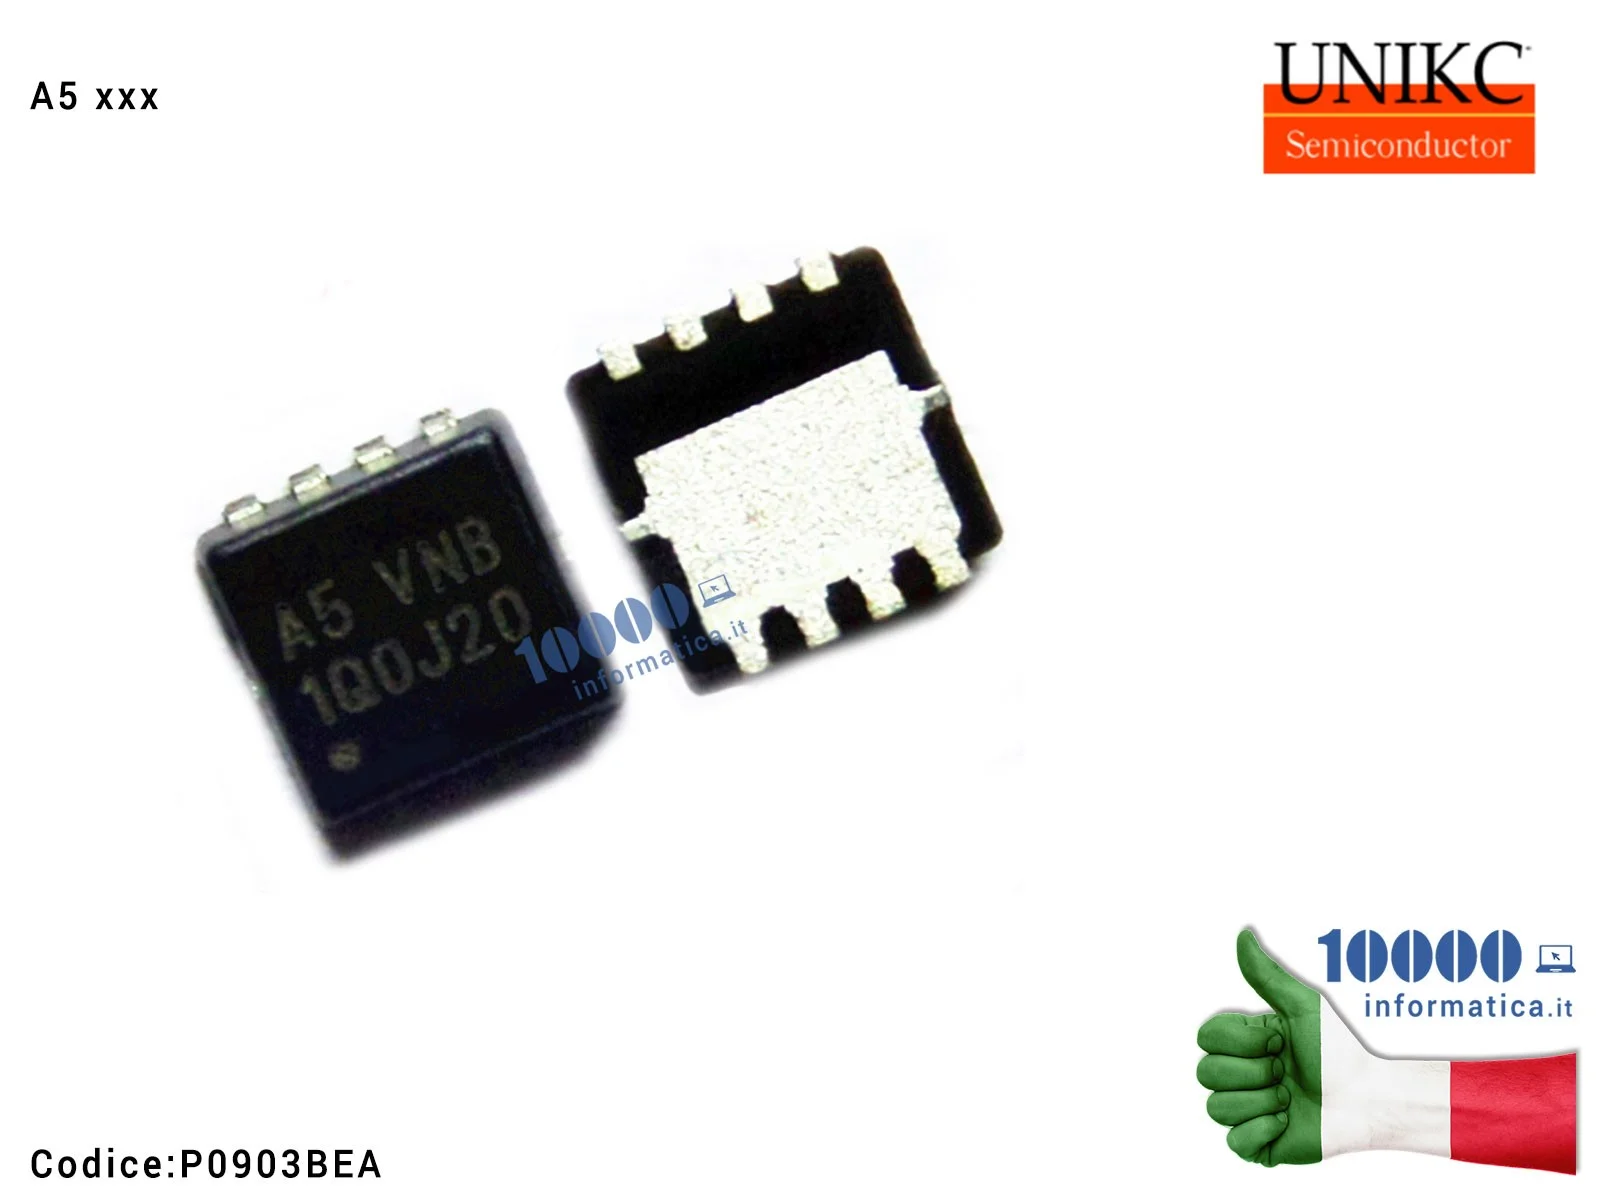 P0903BEA IC Chip UNIKC Mosfet P0903 P0903B P0903BE P0903BEA (A5 GND) (A5 GNC) (A5 PNB) (A5 VNB) (A5 VN8) (A5 GNE) (A5 VNA) (A...